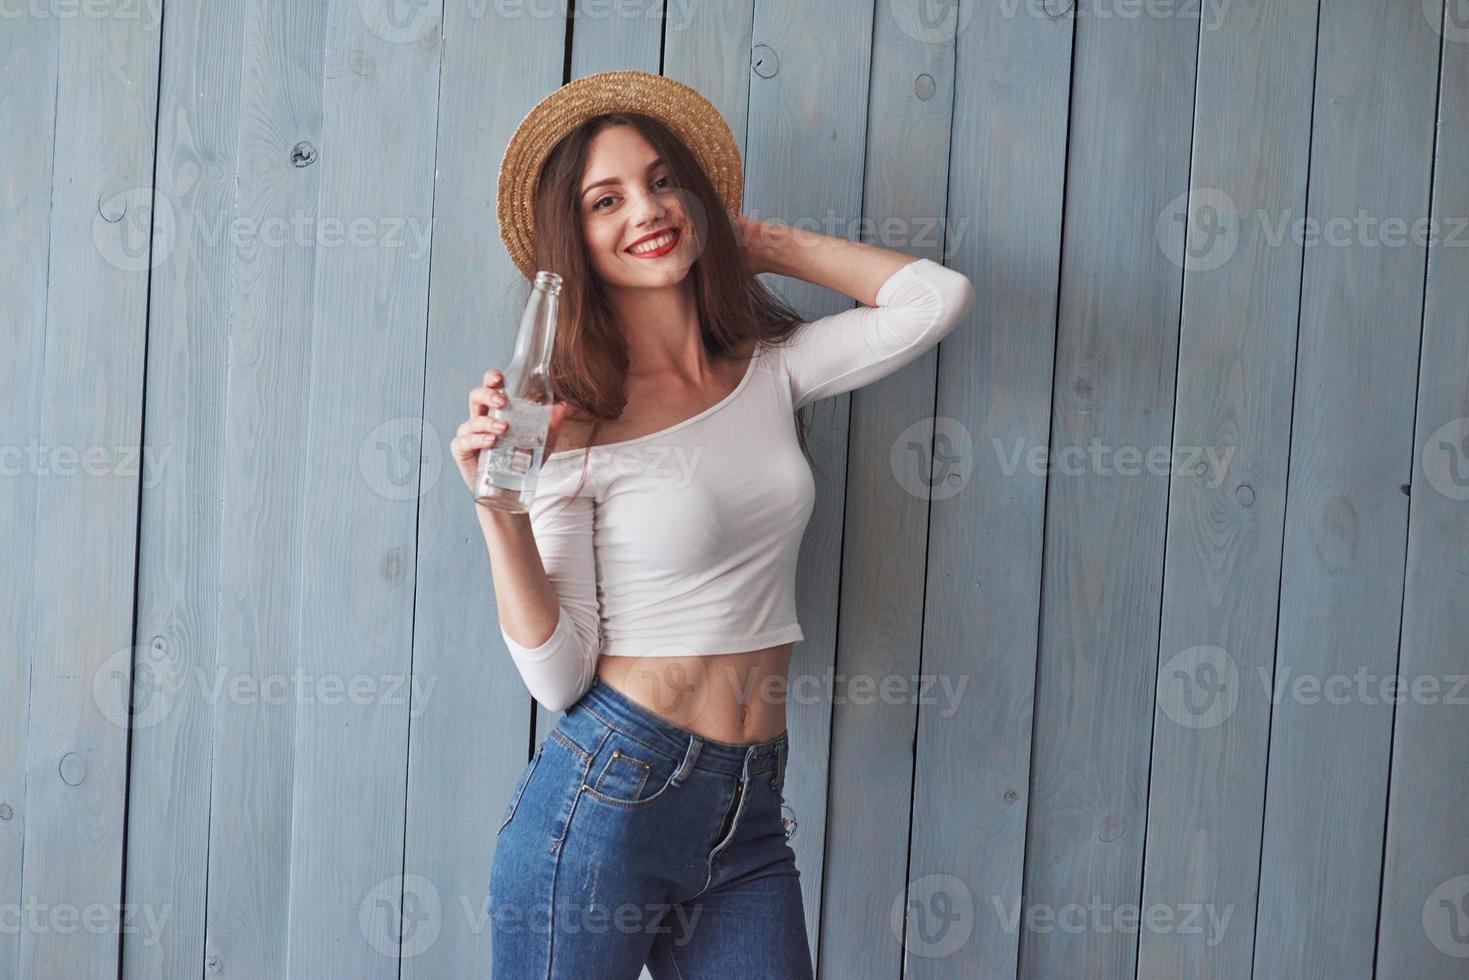 snygg positiv kvinna. porträtt av vacker ung flicka med hatt på huvudet och flaska i handen stående mot trävägg foto